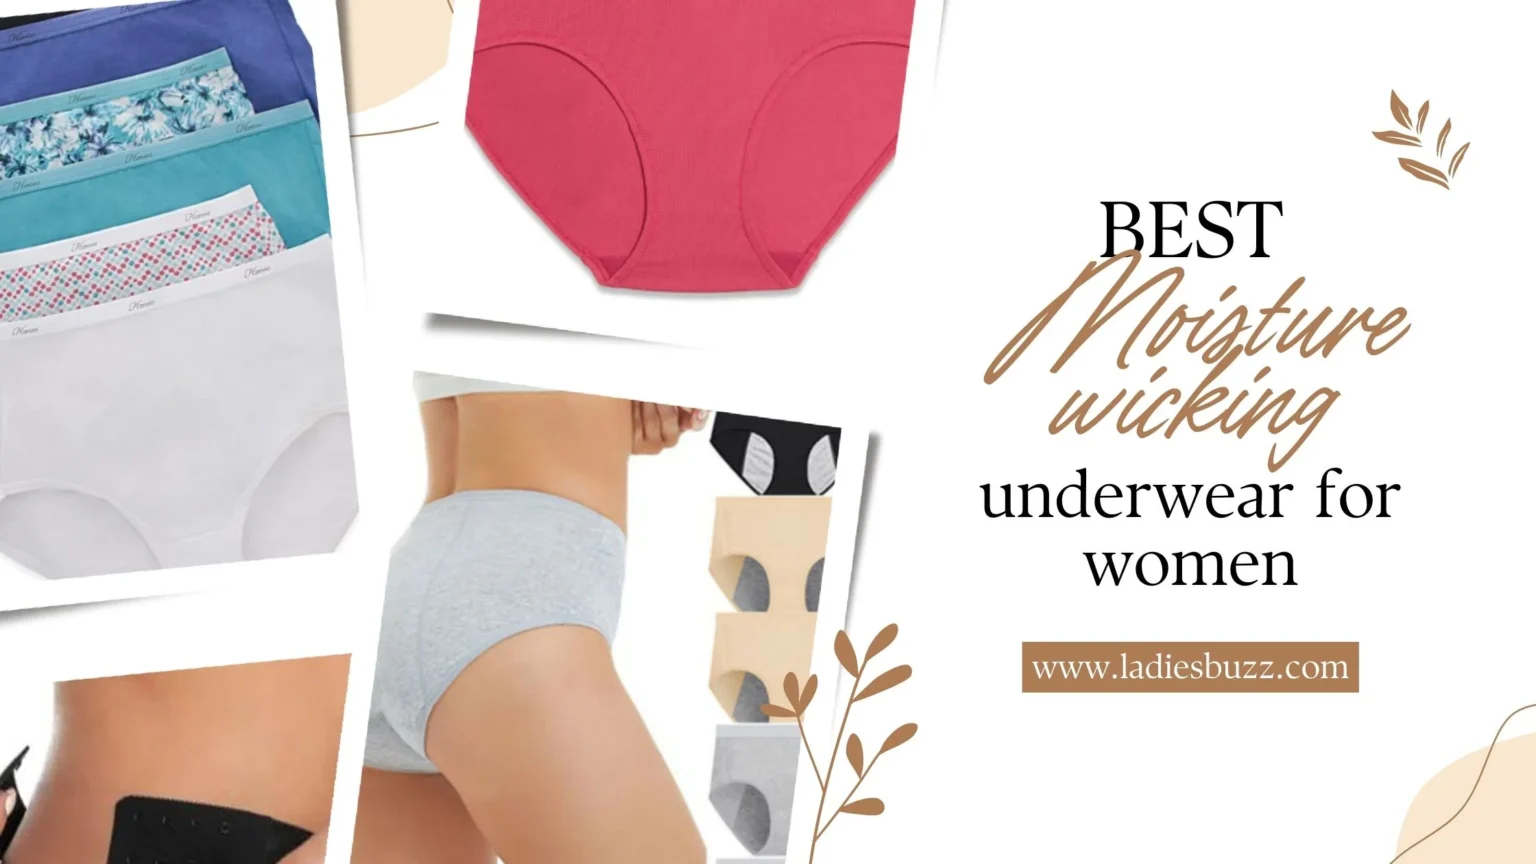 Best Moisture wicking Underwear for women